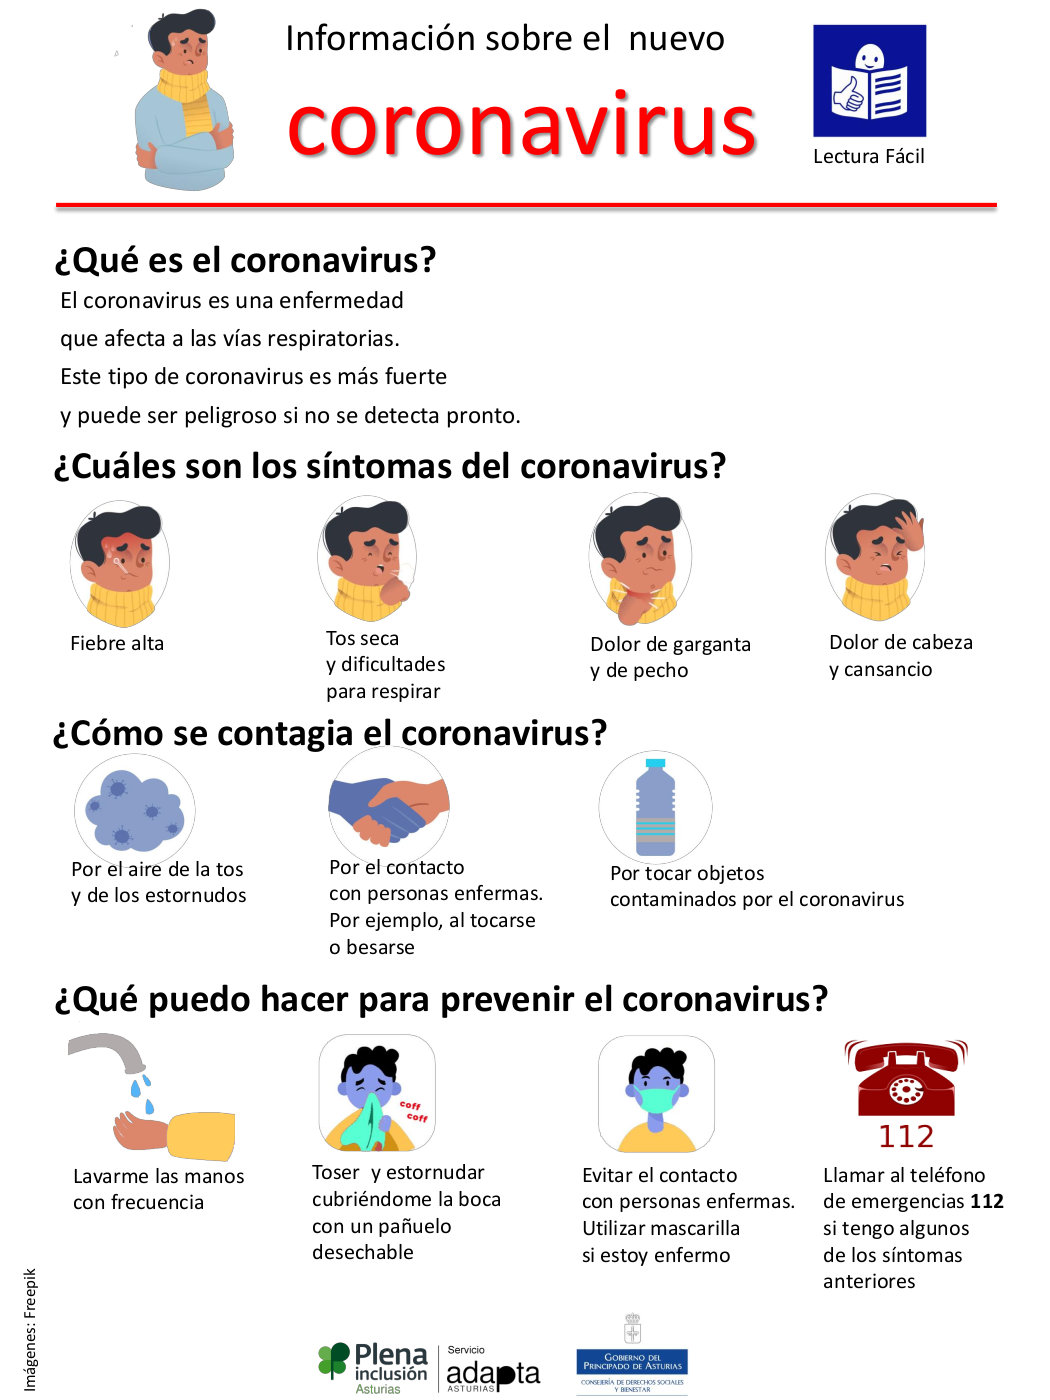 Información sobre el nuevo coronavirus. Lectura fácil